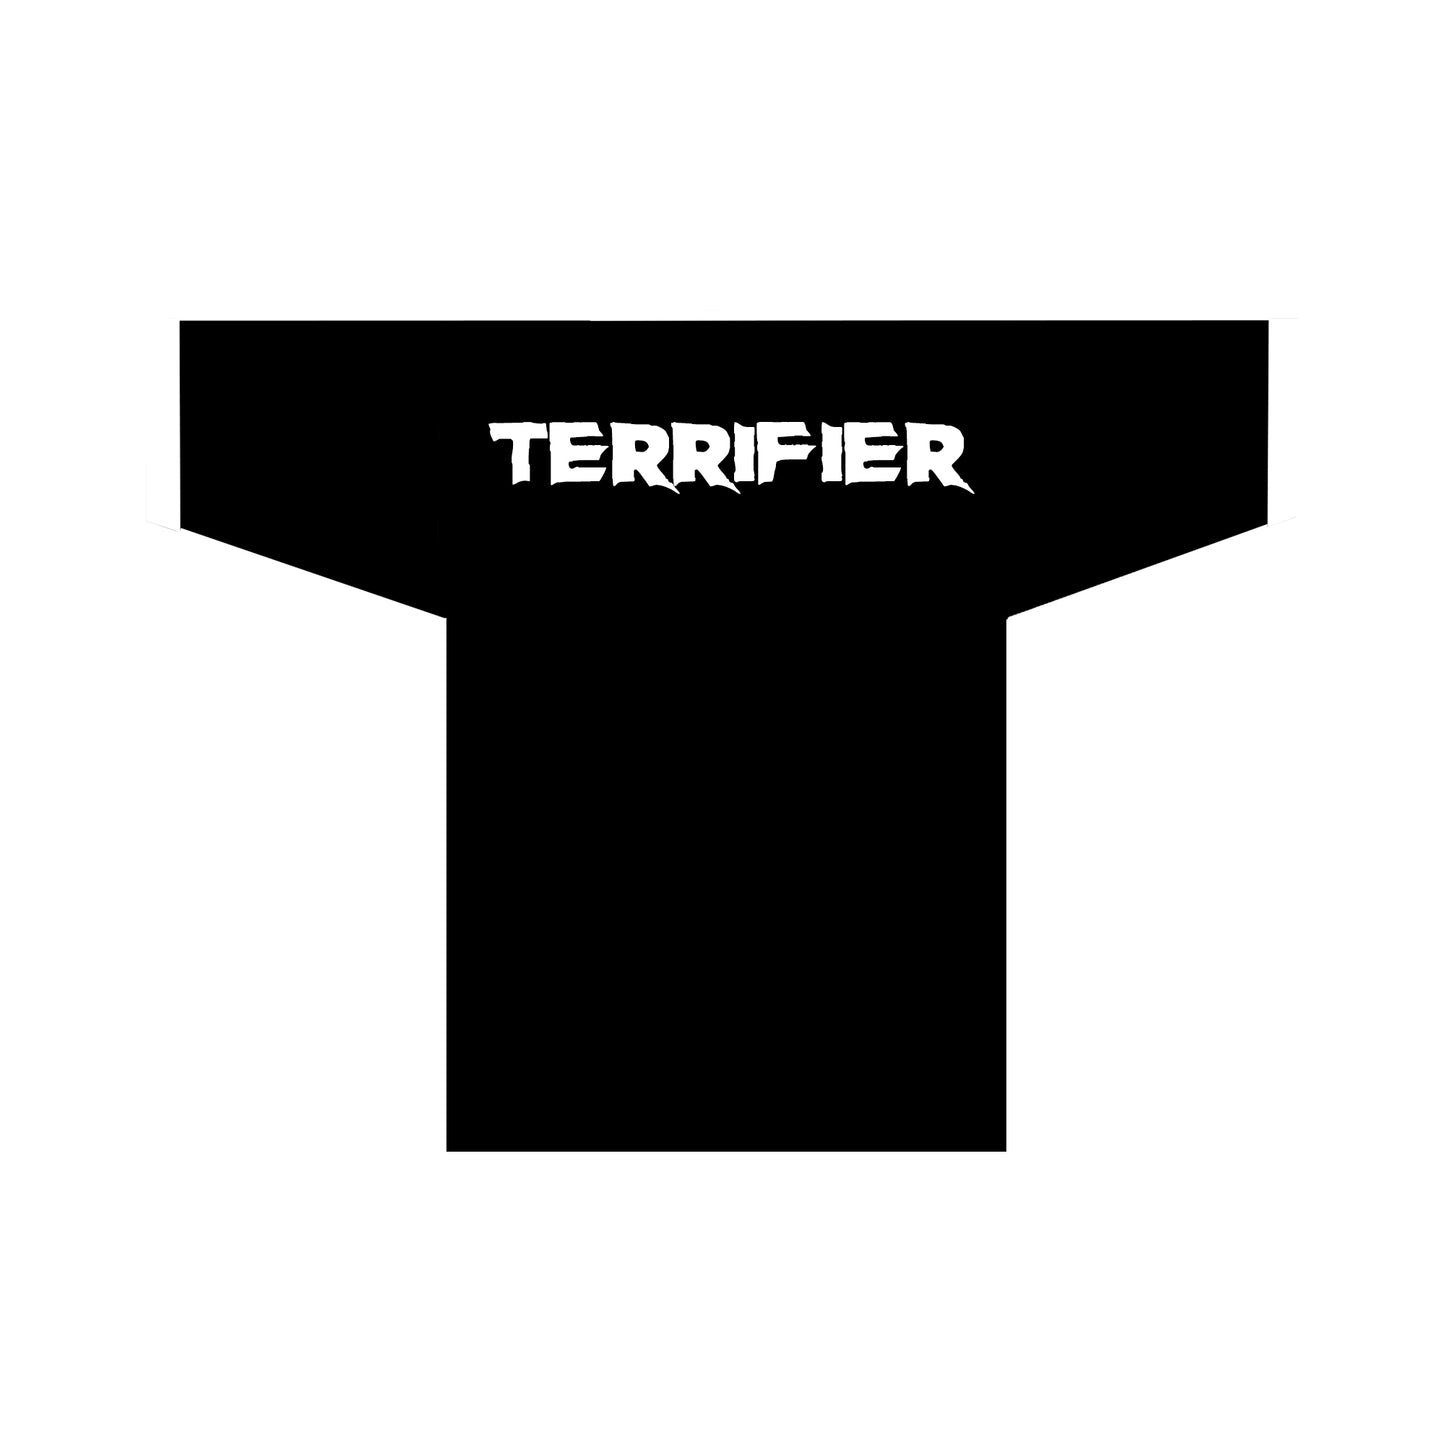 Terrifier - Football Jersey - Clean